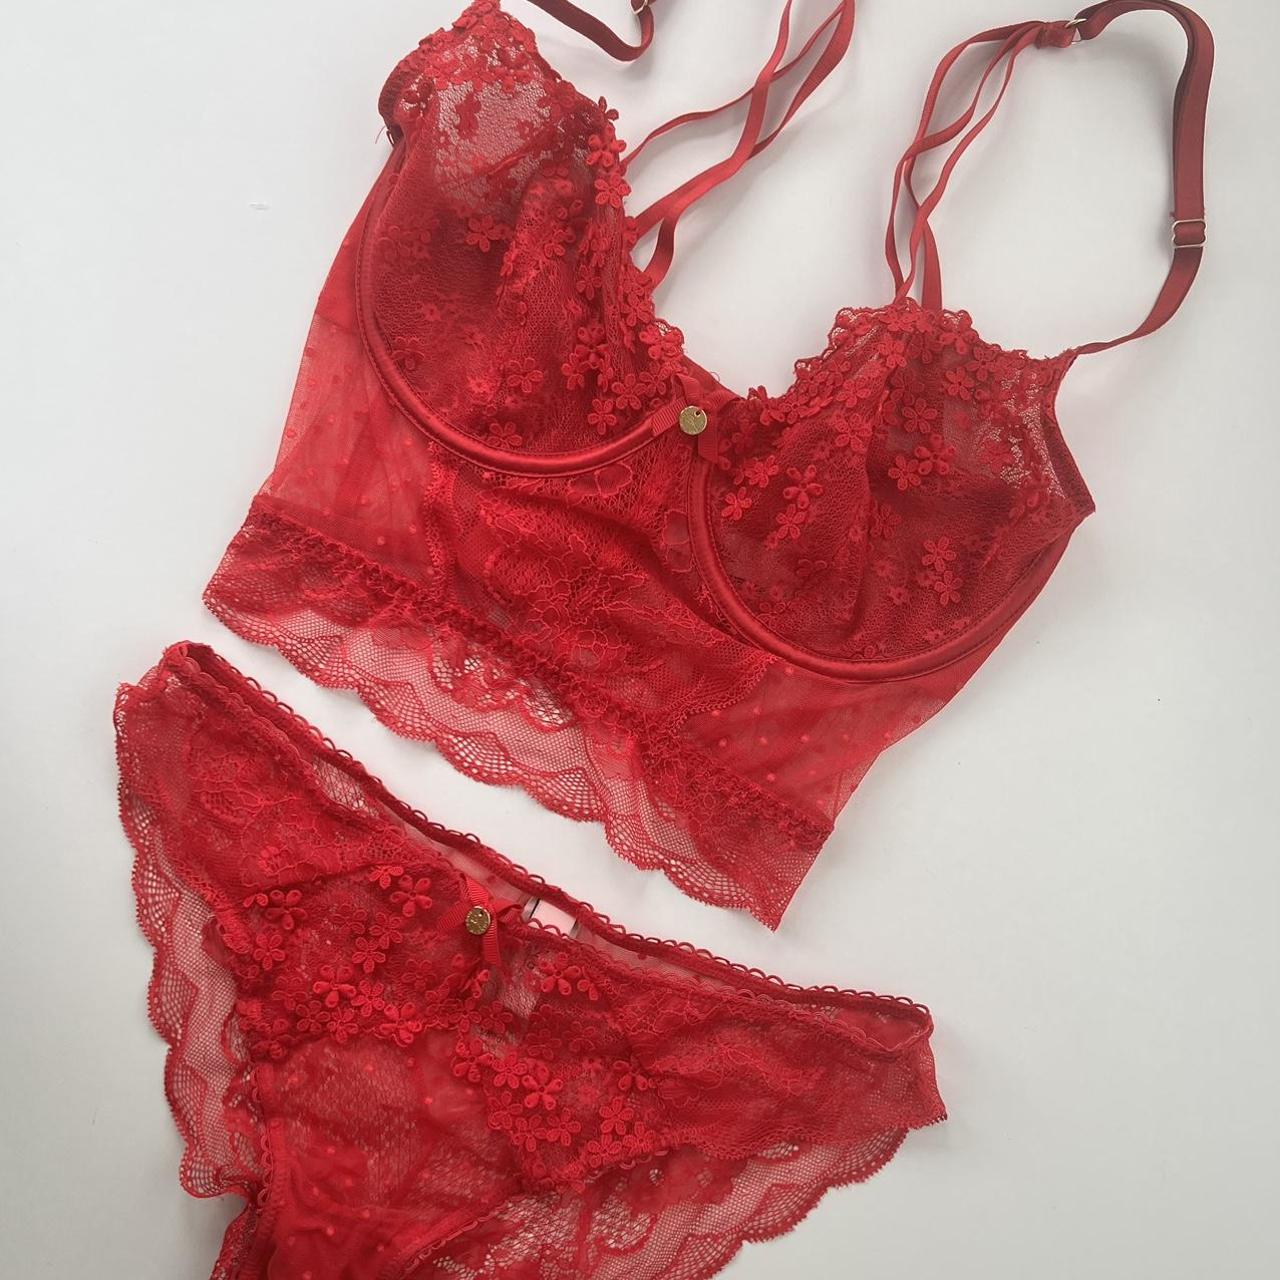 Boux Avenue red lace underwear set. Longline... - Depop